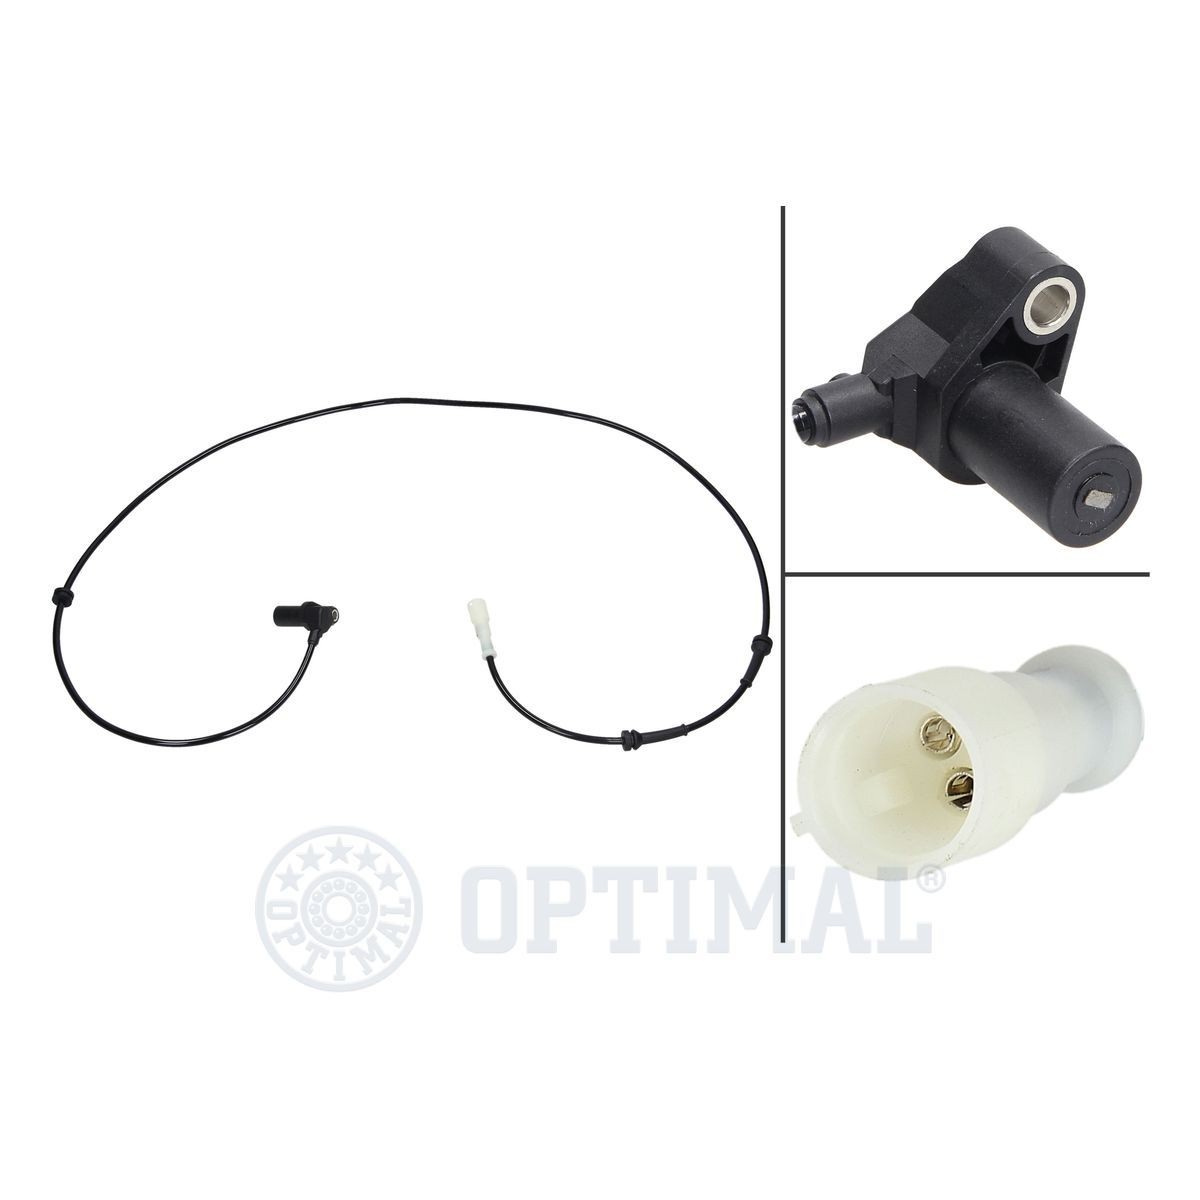 Original OPTIMAL Anti lock brake sensor 06-S219 for RENAULT CLIO